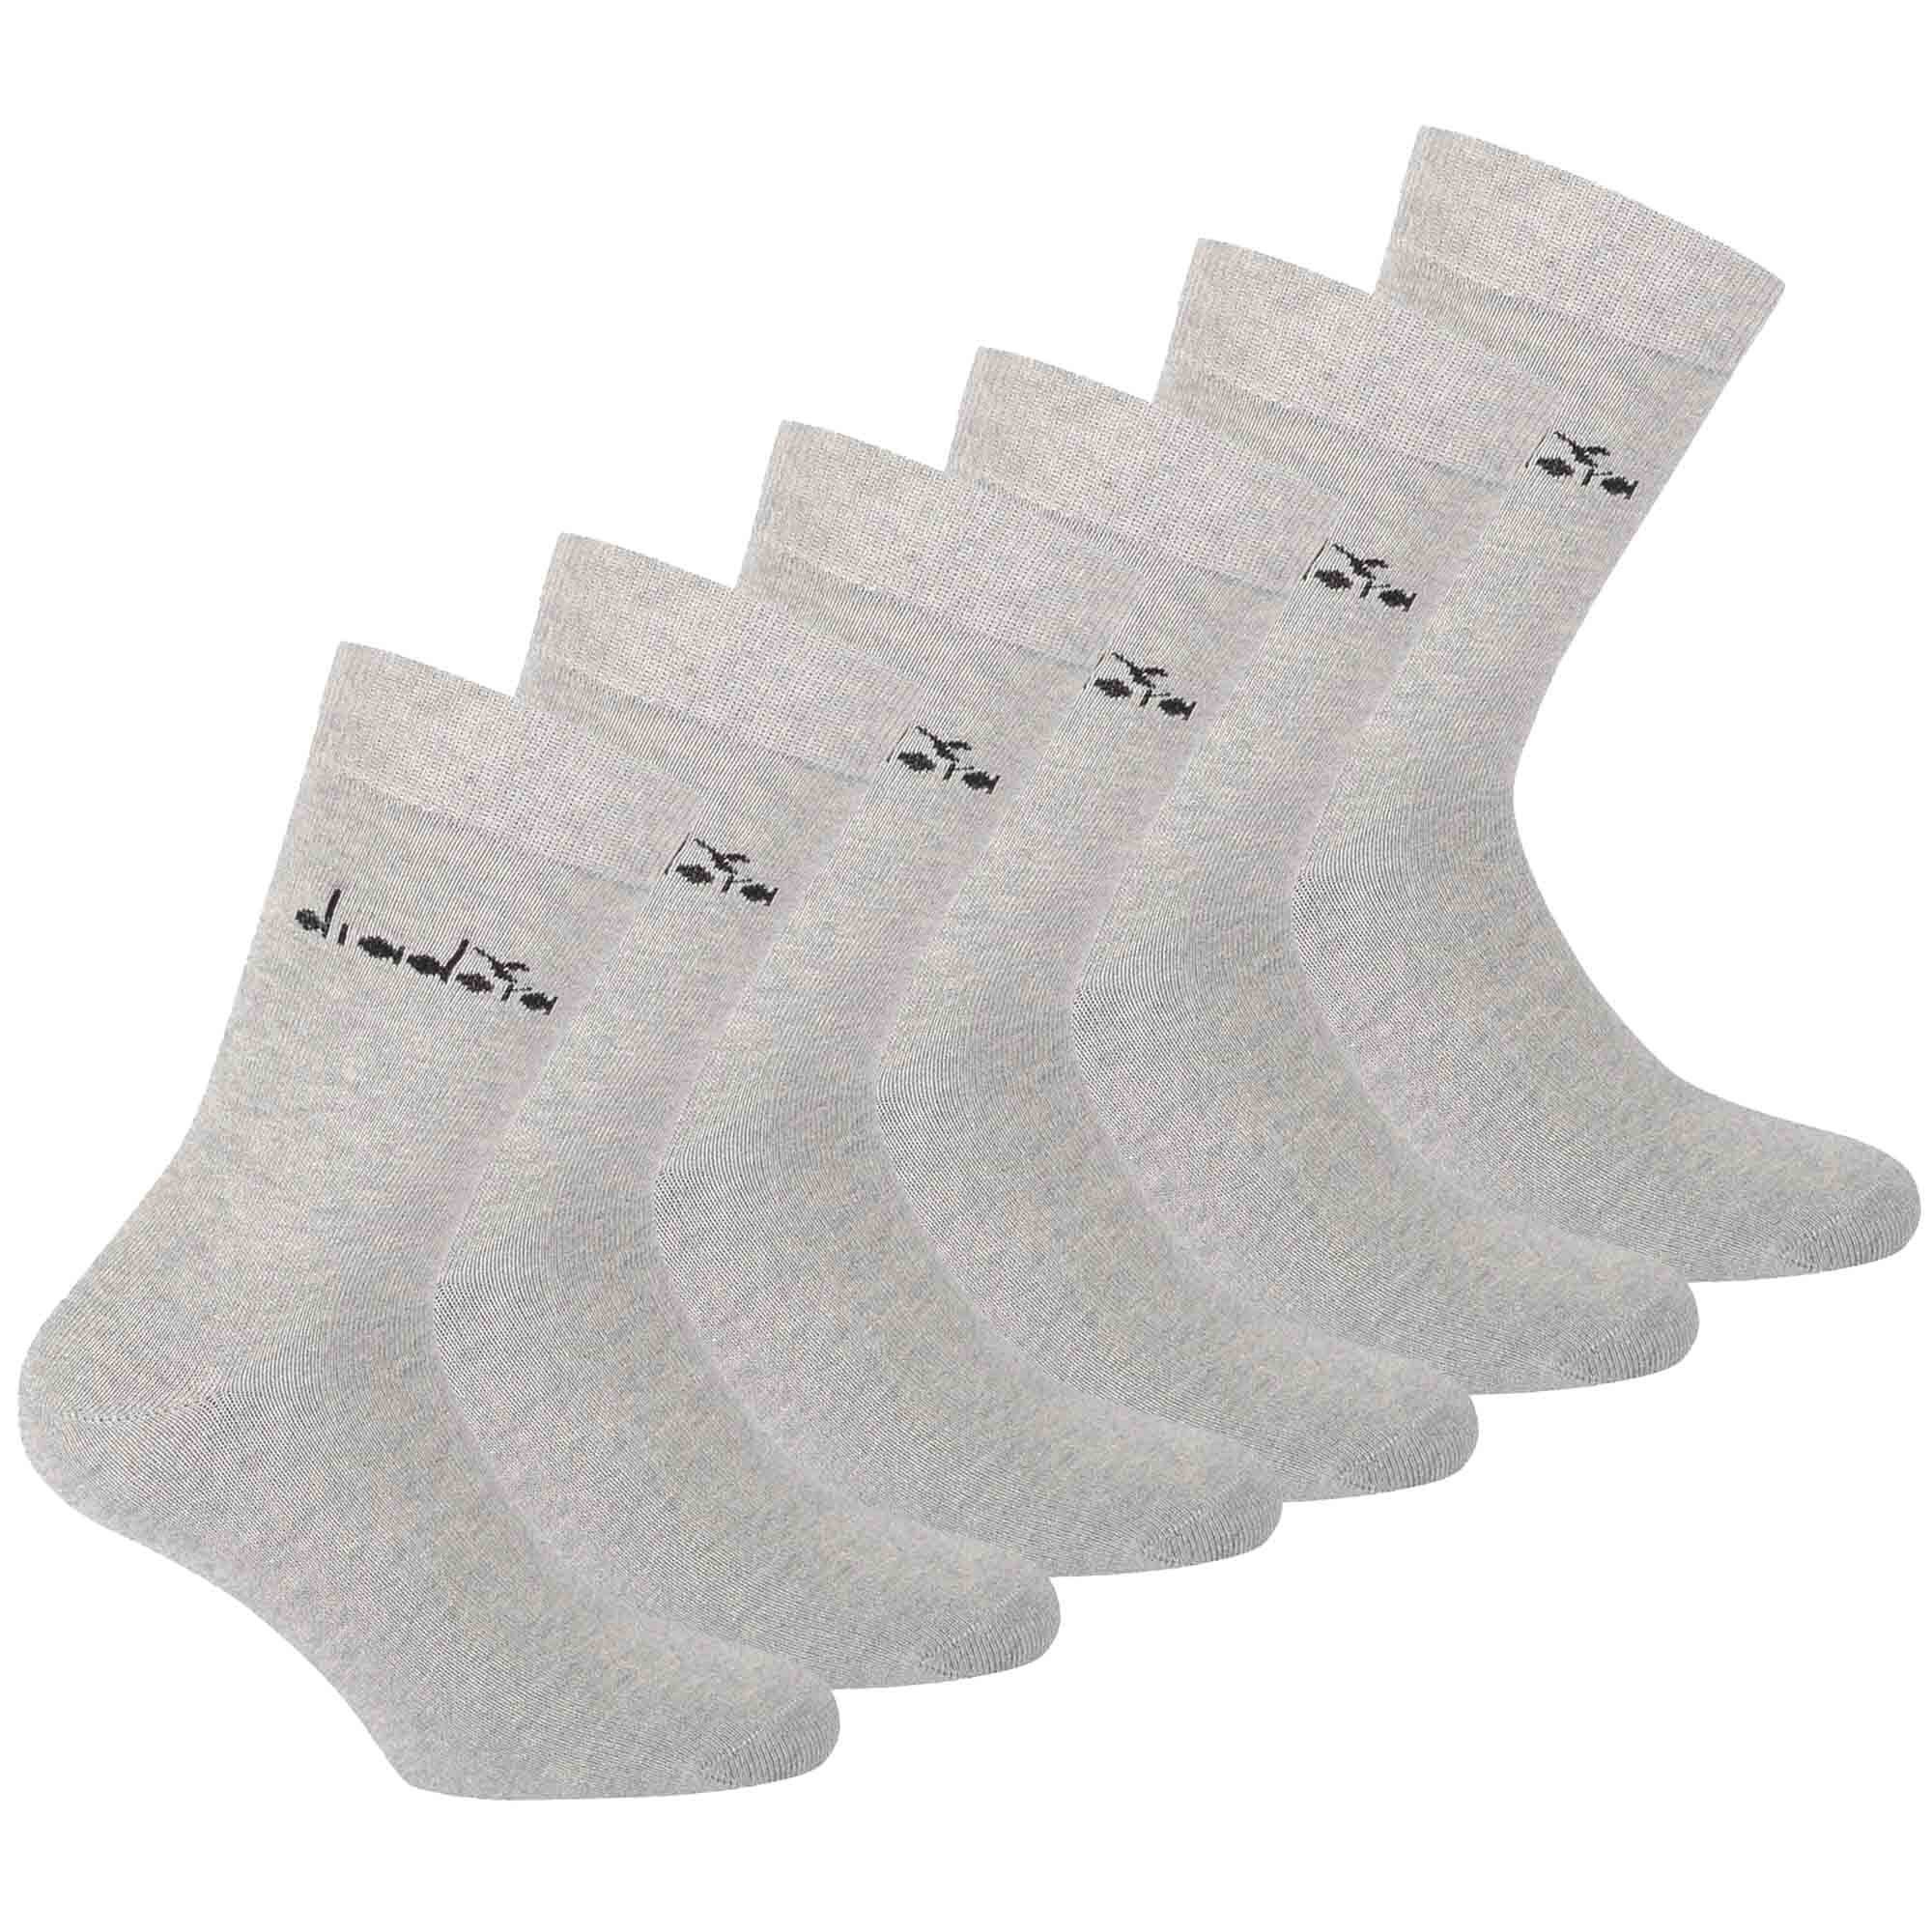 Diadora Pack Sportsocken - Baumwolle 6er Socken, Hellgrau Sportsocken, Unisex